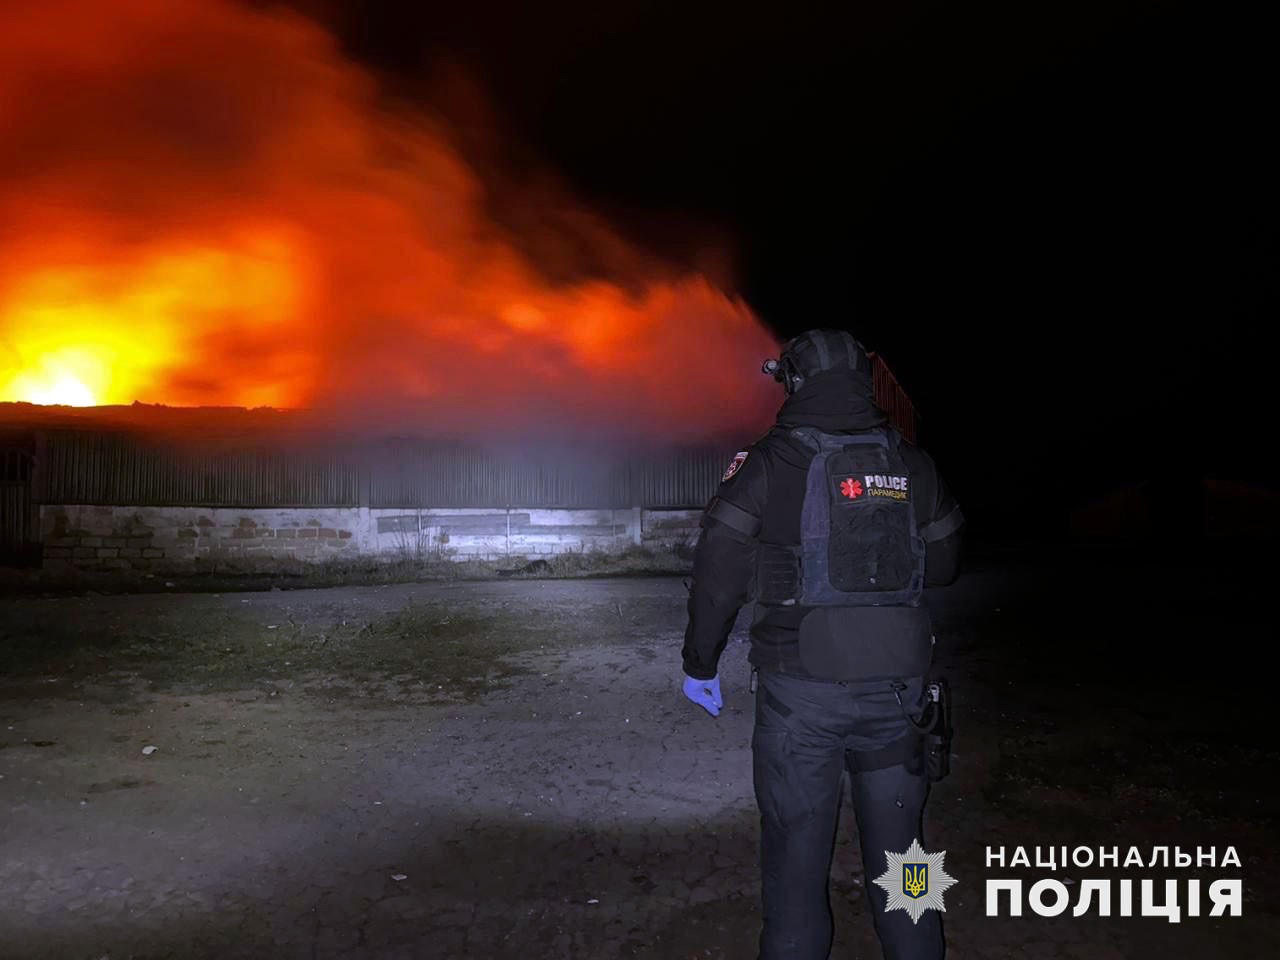 Полицейский в Донецкой области наблюдает за вызванным обстрелом пожаром